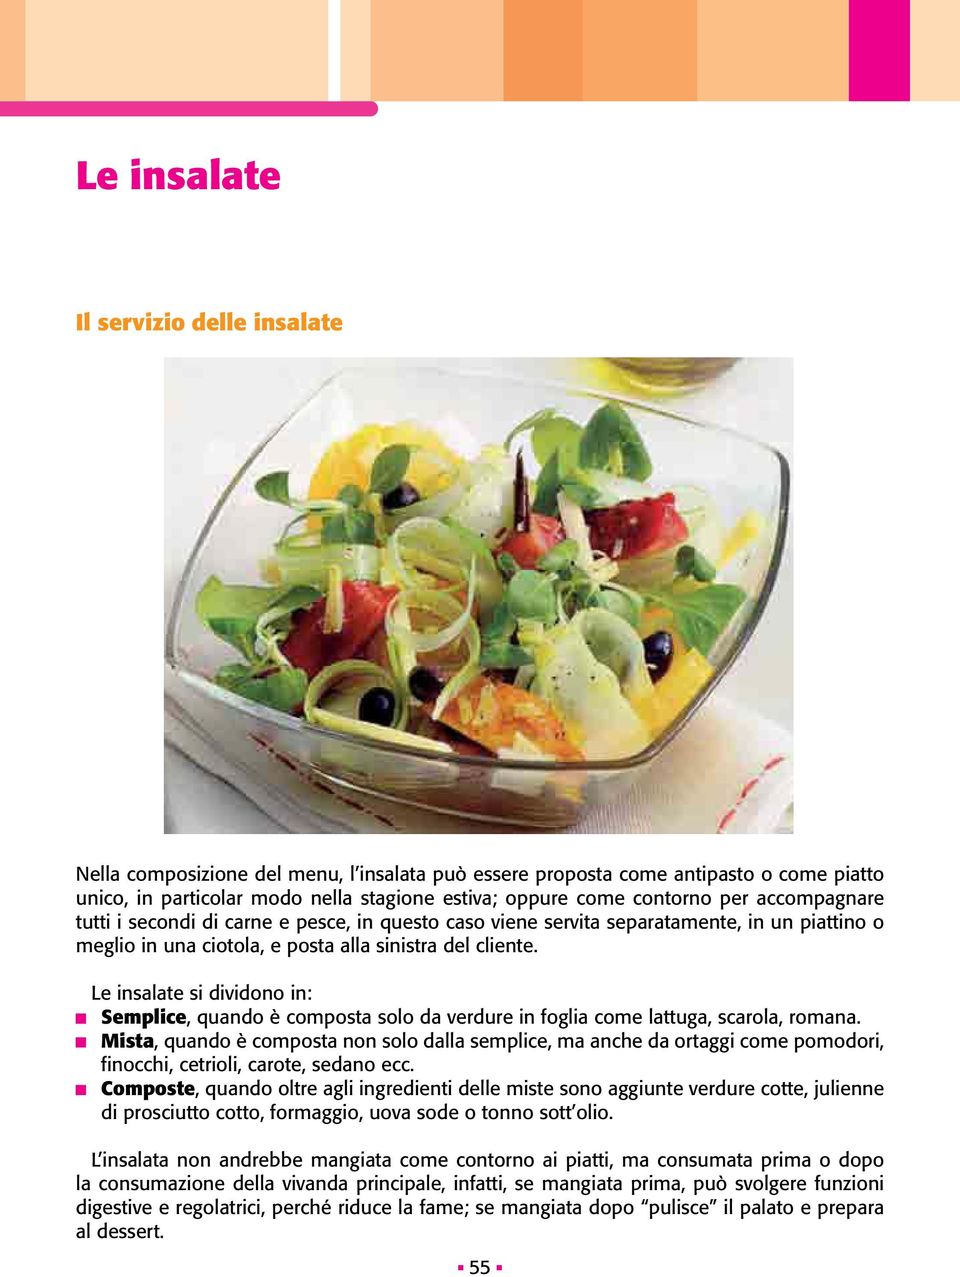 Le insalate si dividono in: Semplice, quando è composta solo da verdure in foglia come lattuga, scarola, romana.